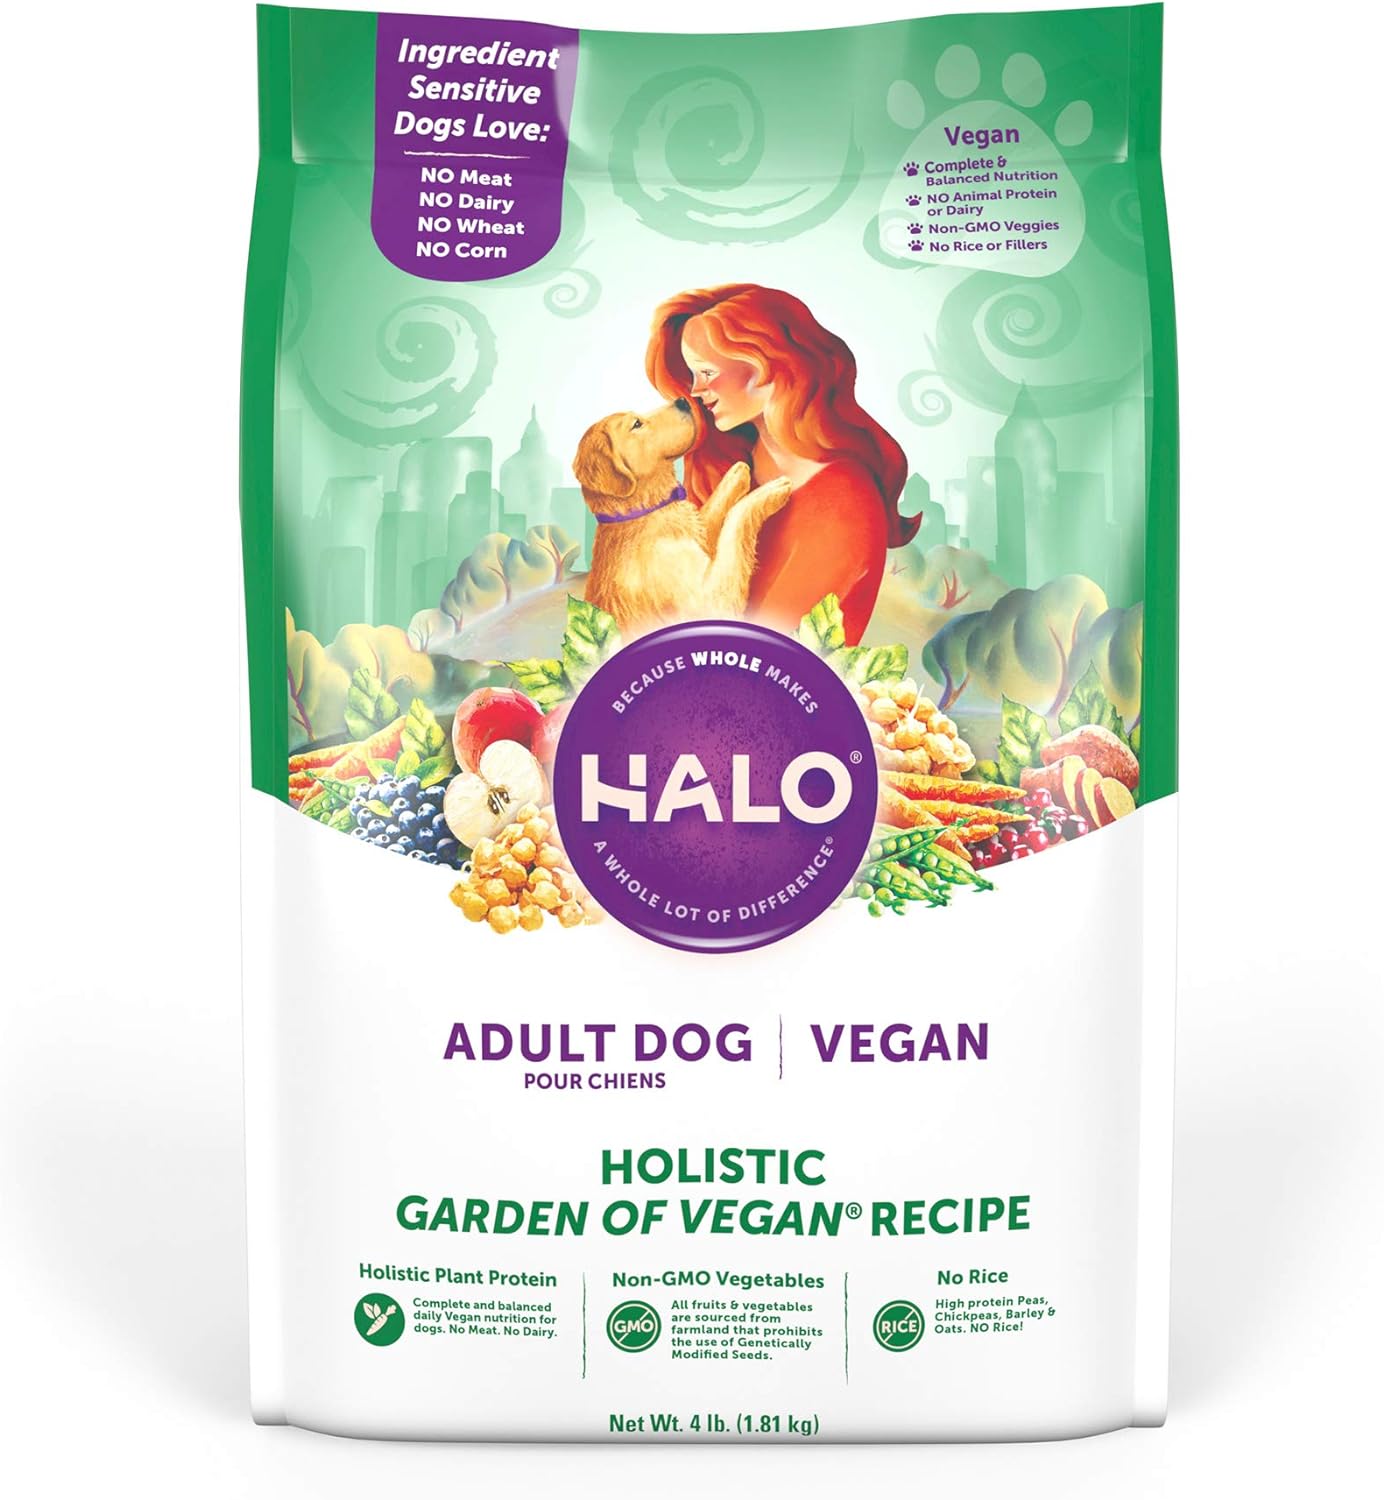 Halo Vegan Dry Dog Food, Vegan Recipe